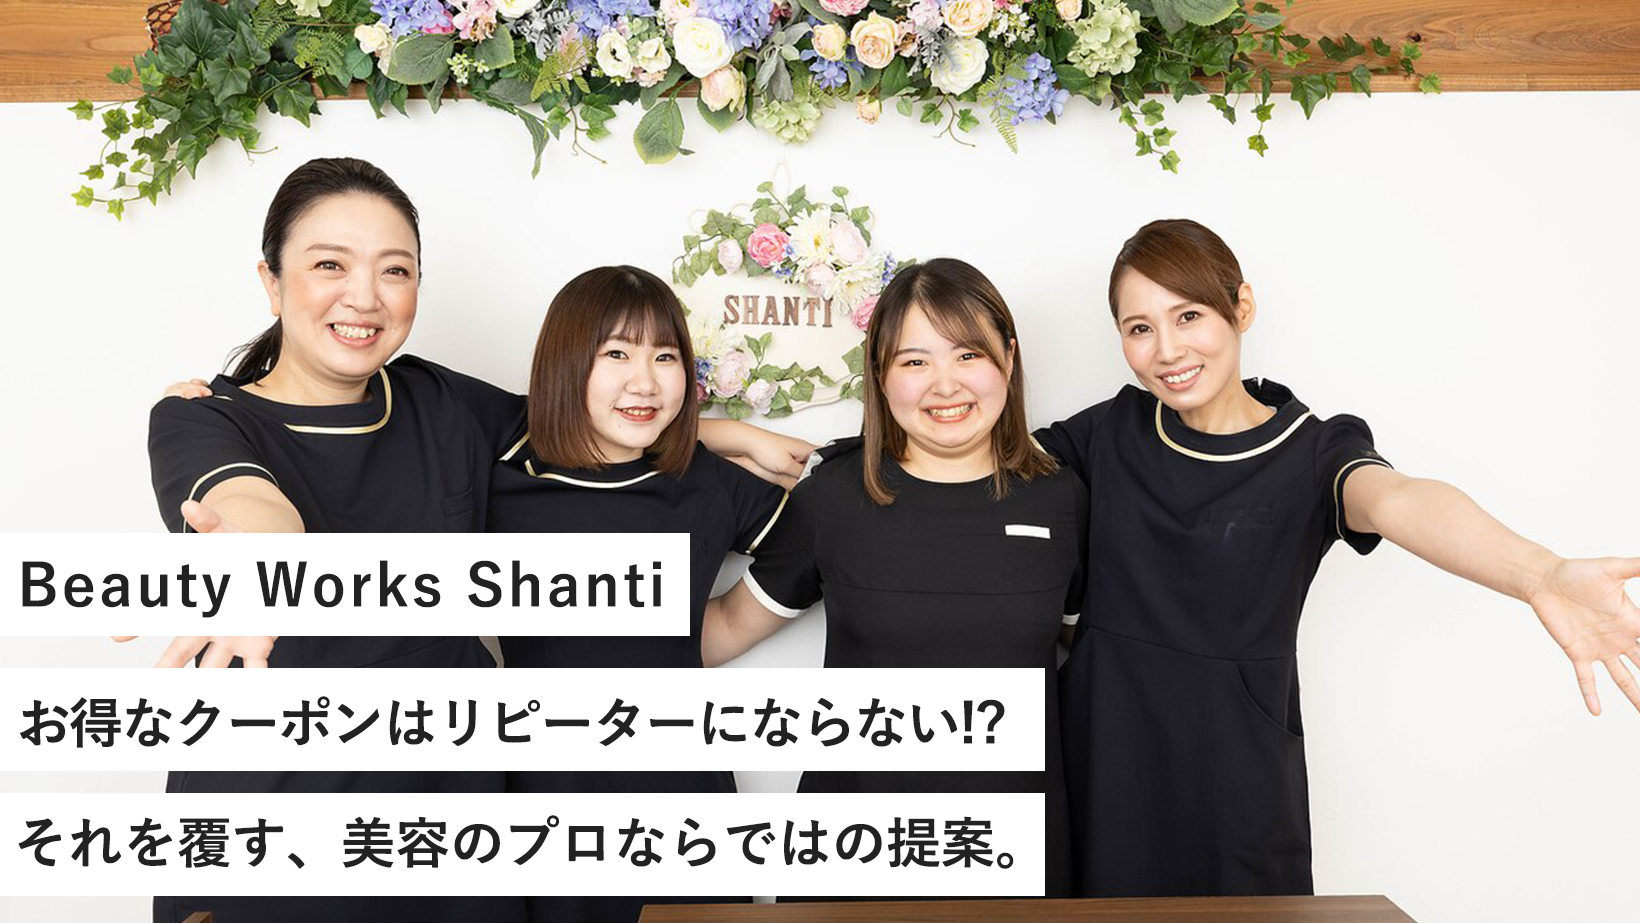 Beauty Works Shanti/お得なクーポンはリピーターにならない!?それを覆す、美容のプロならではの提案。